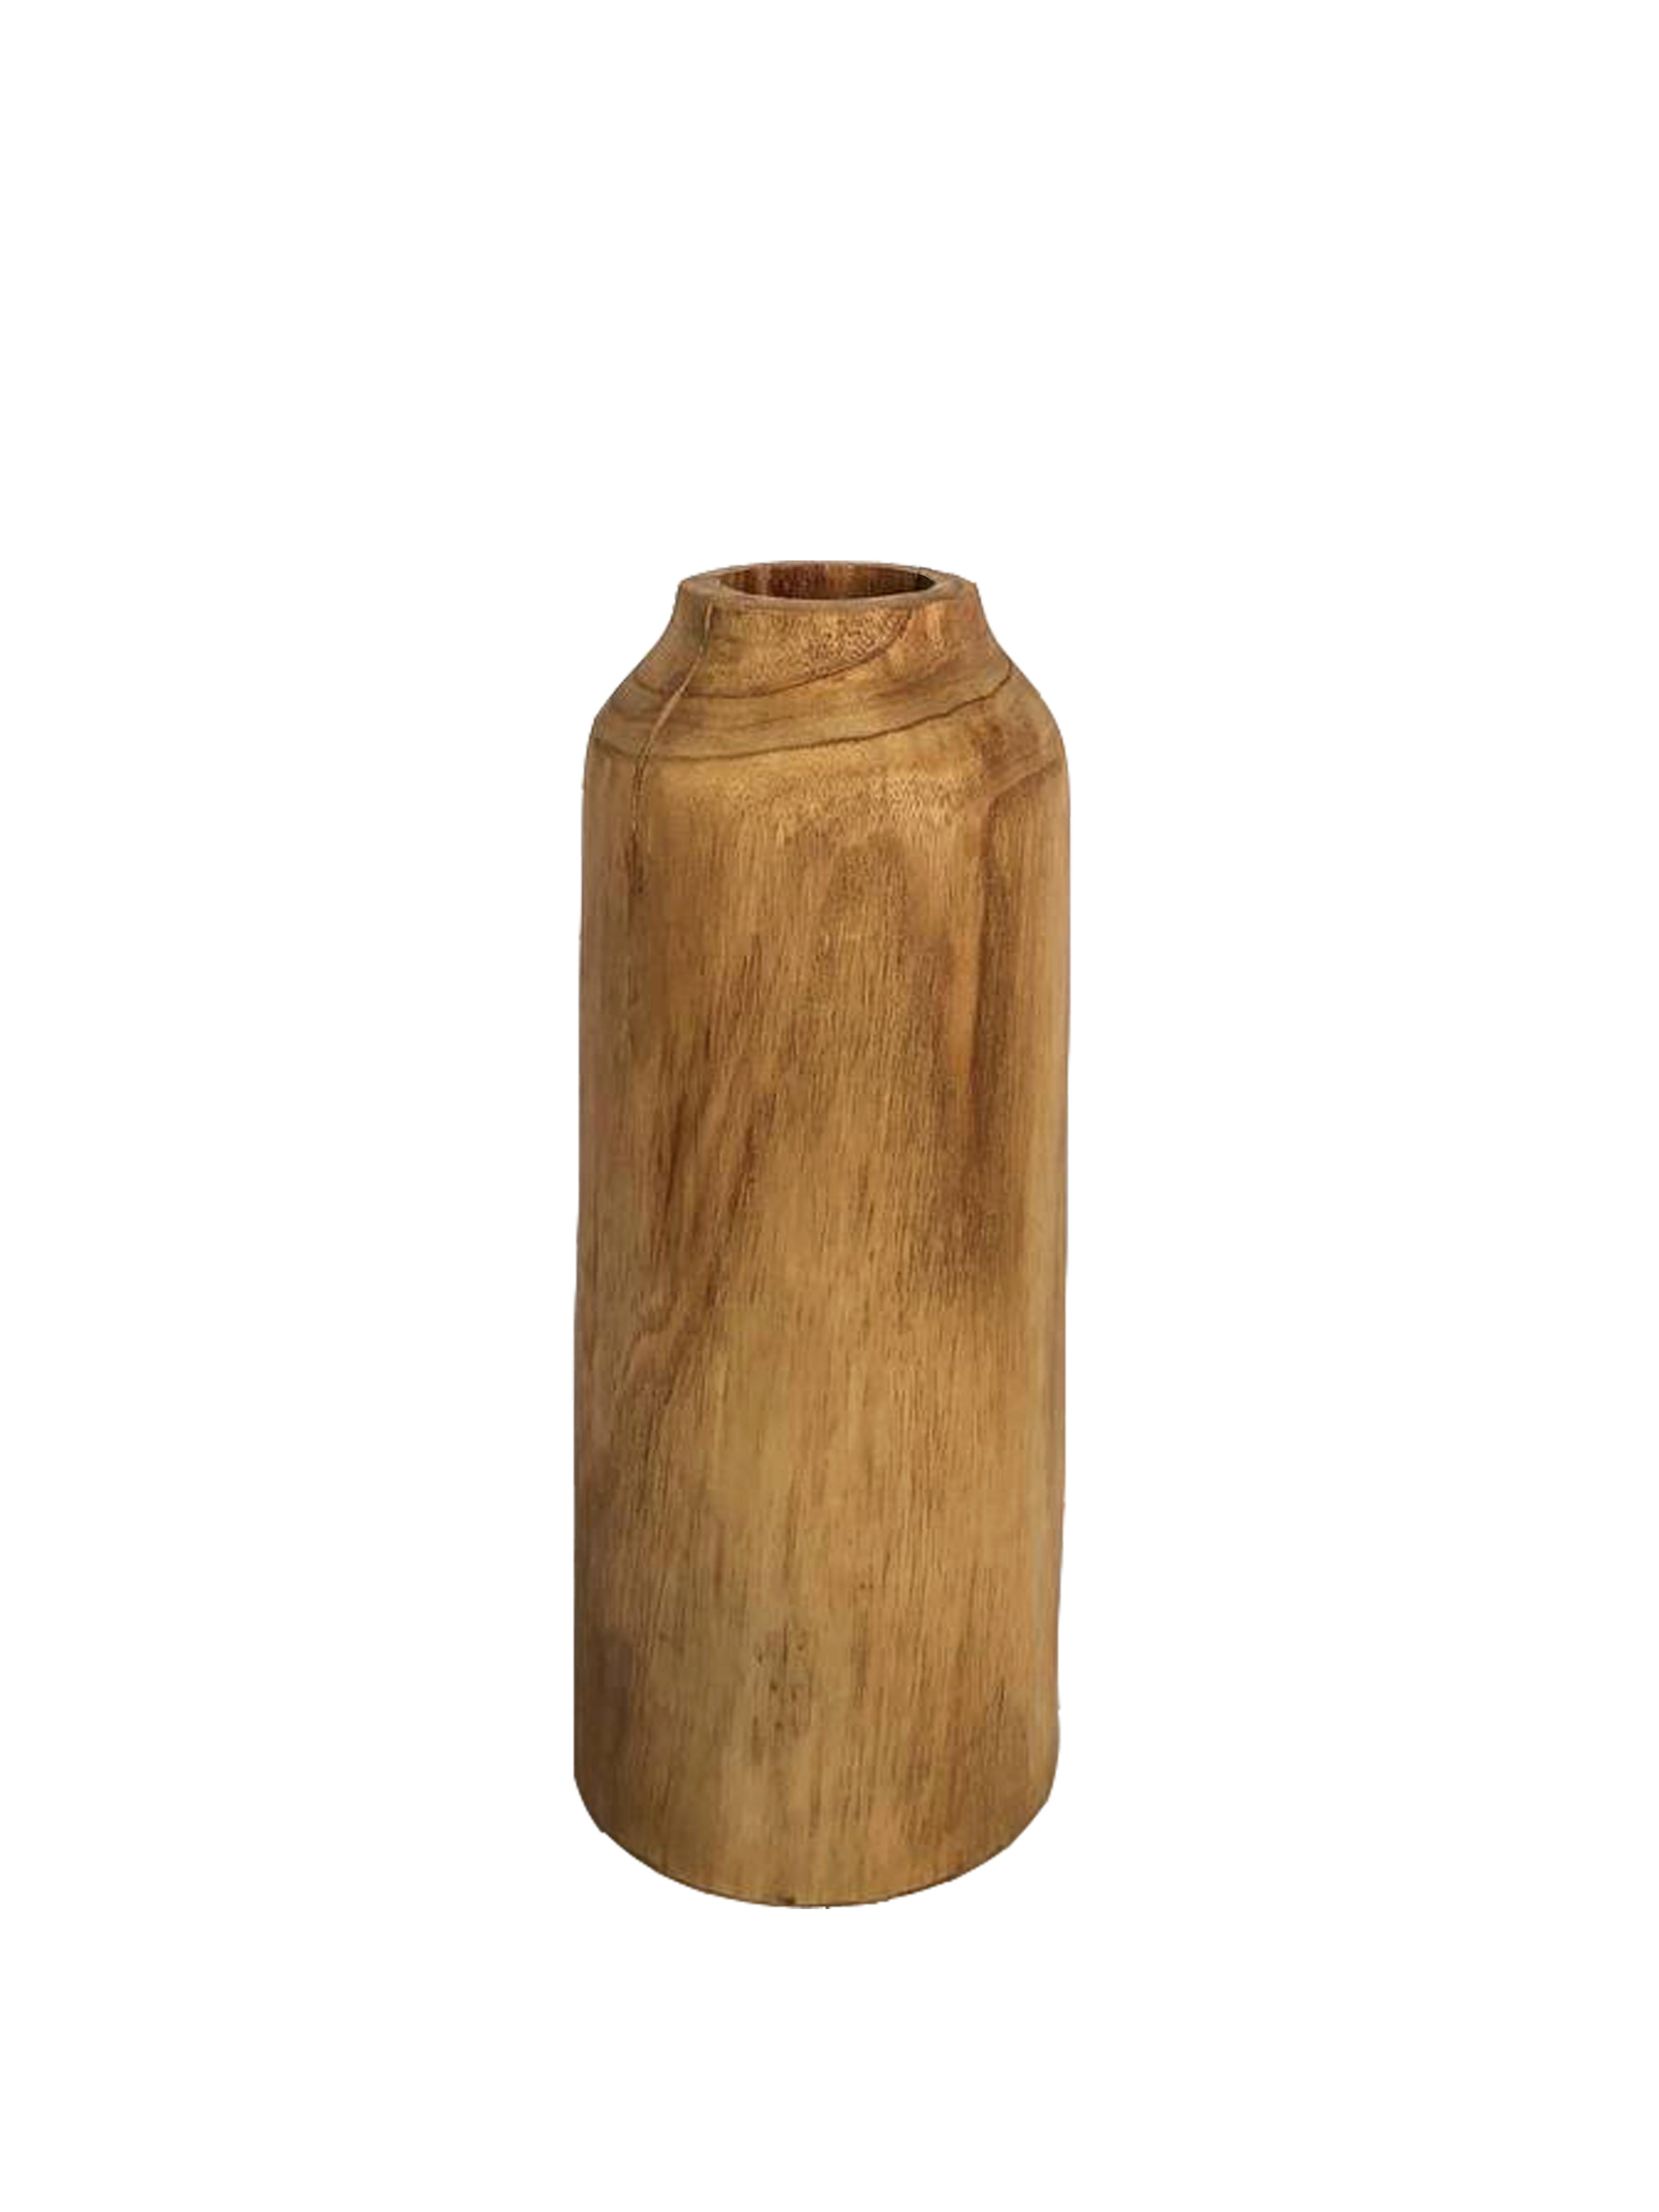 Ambia Home VÁZA, dřevo, plast, 30 cm - přírodní barvy - dřevo mindi